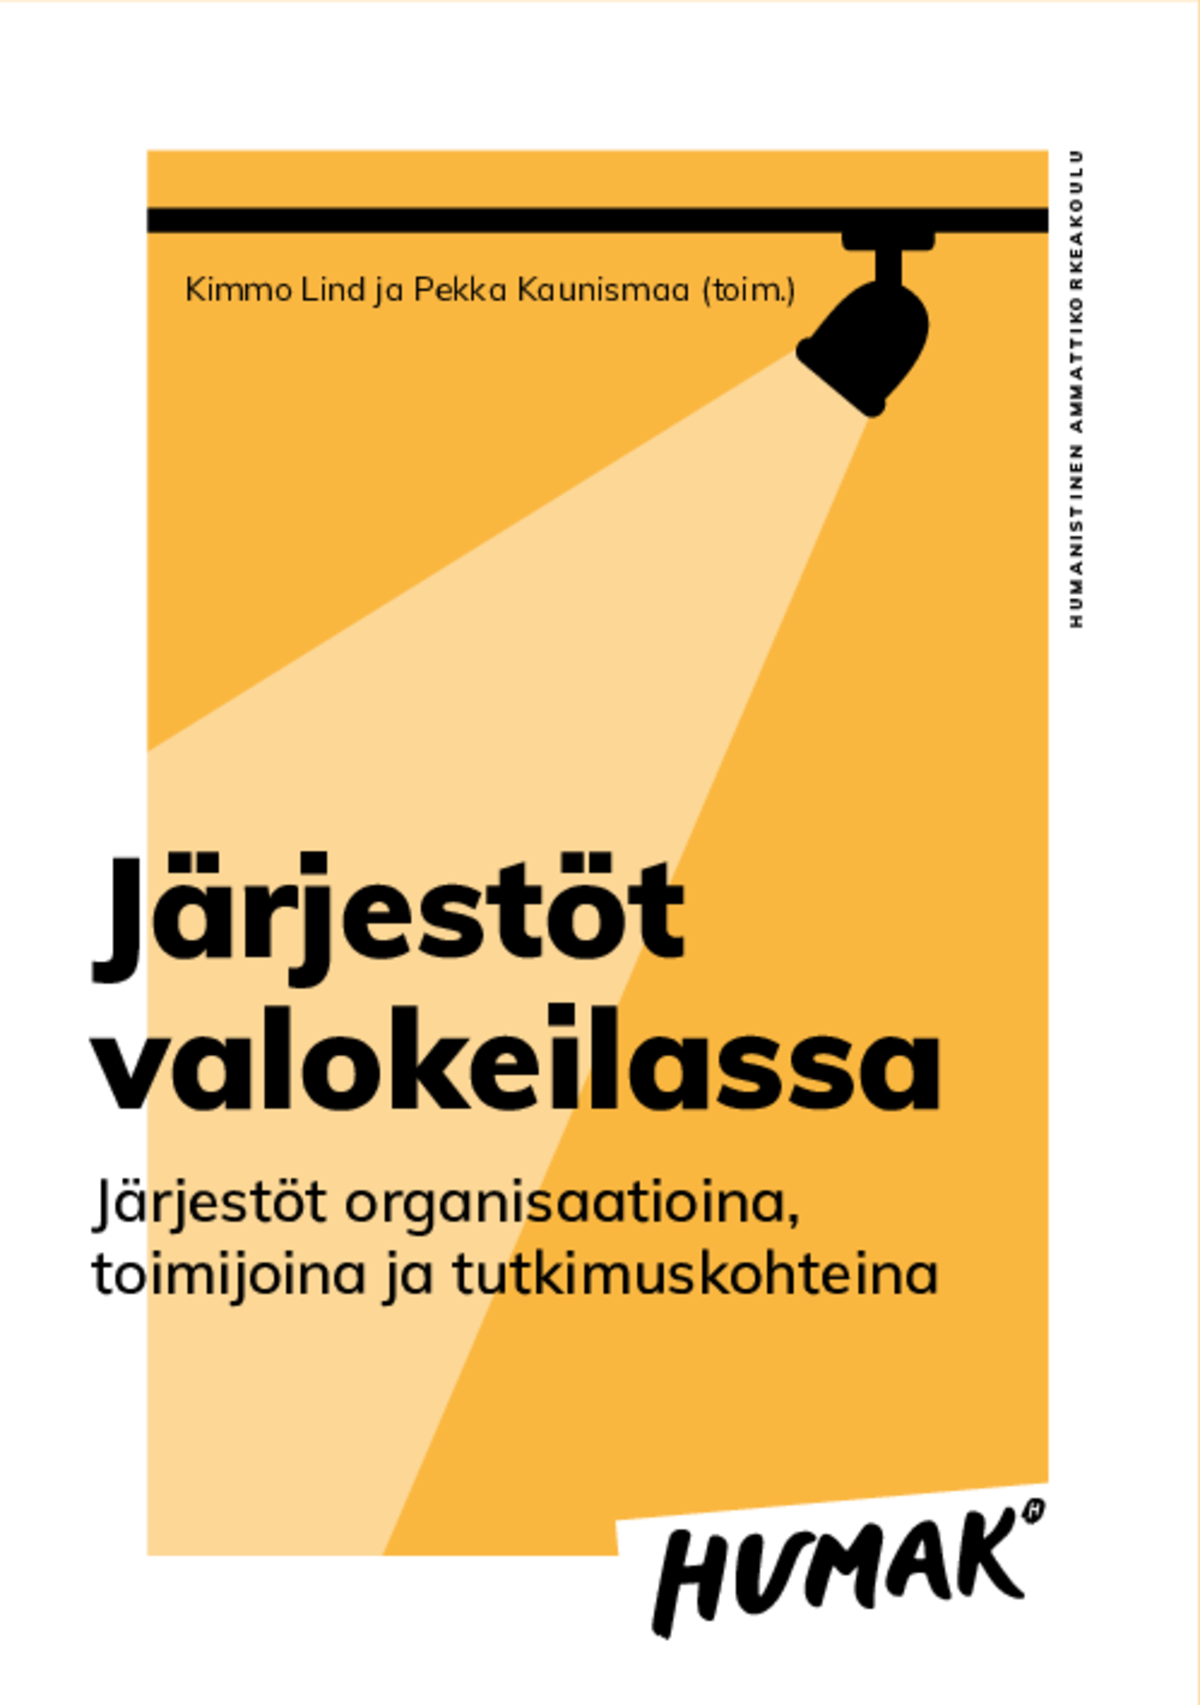 Kimmo Lind ja Pekka Kaunismaa (toim.) Järjestöt valokeilassa